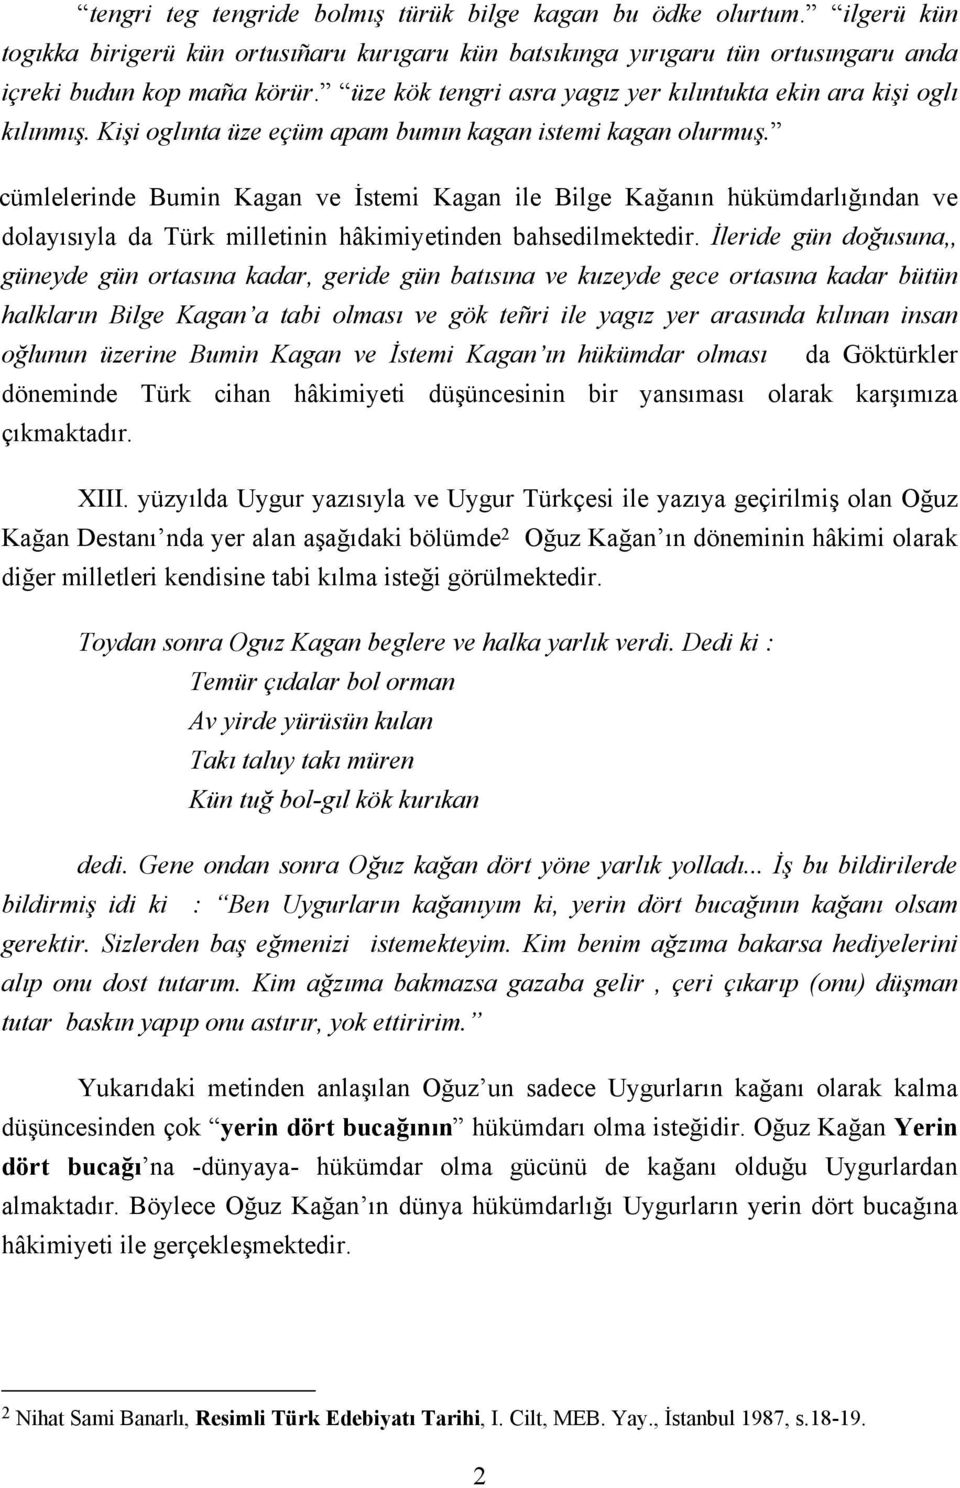 cümlelerinde Bumin Kagan ve İstemi Kagan ile Bilge Kağanın hükümdarlığından ve dolayısıyla da Türk milletinin hâkimiyetinden bahsedilmektedir.